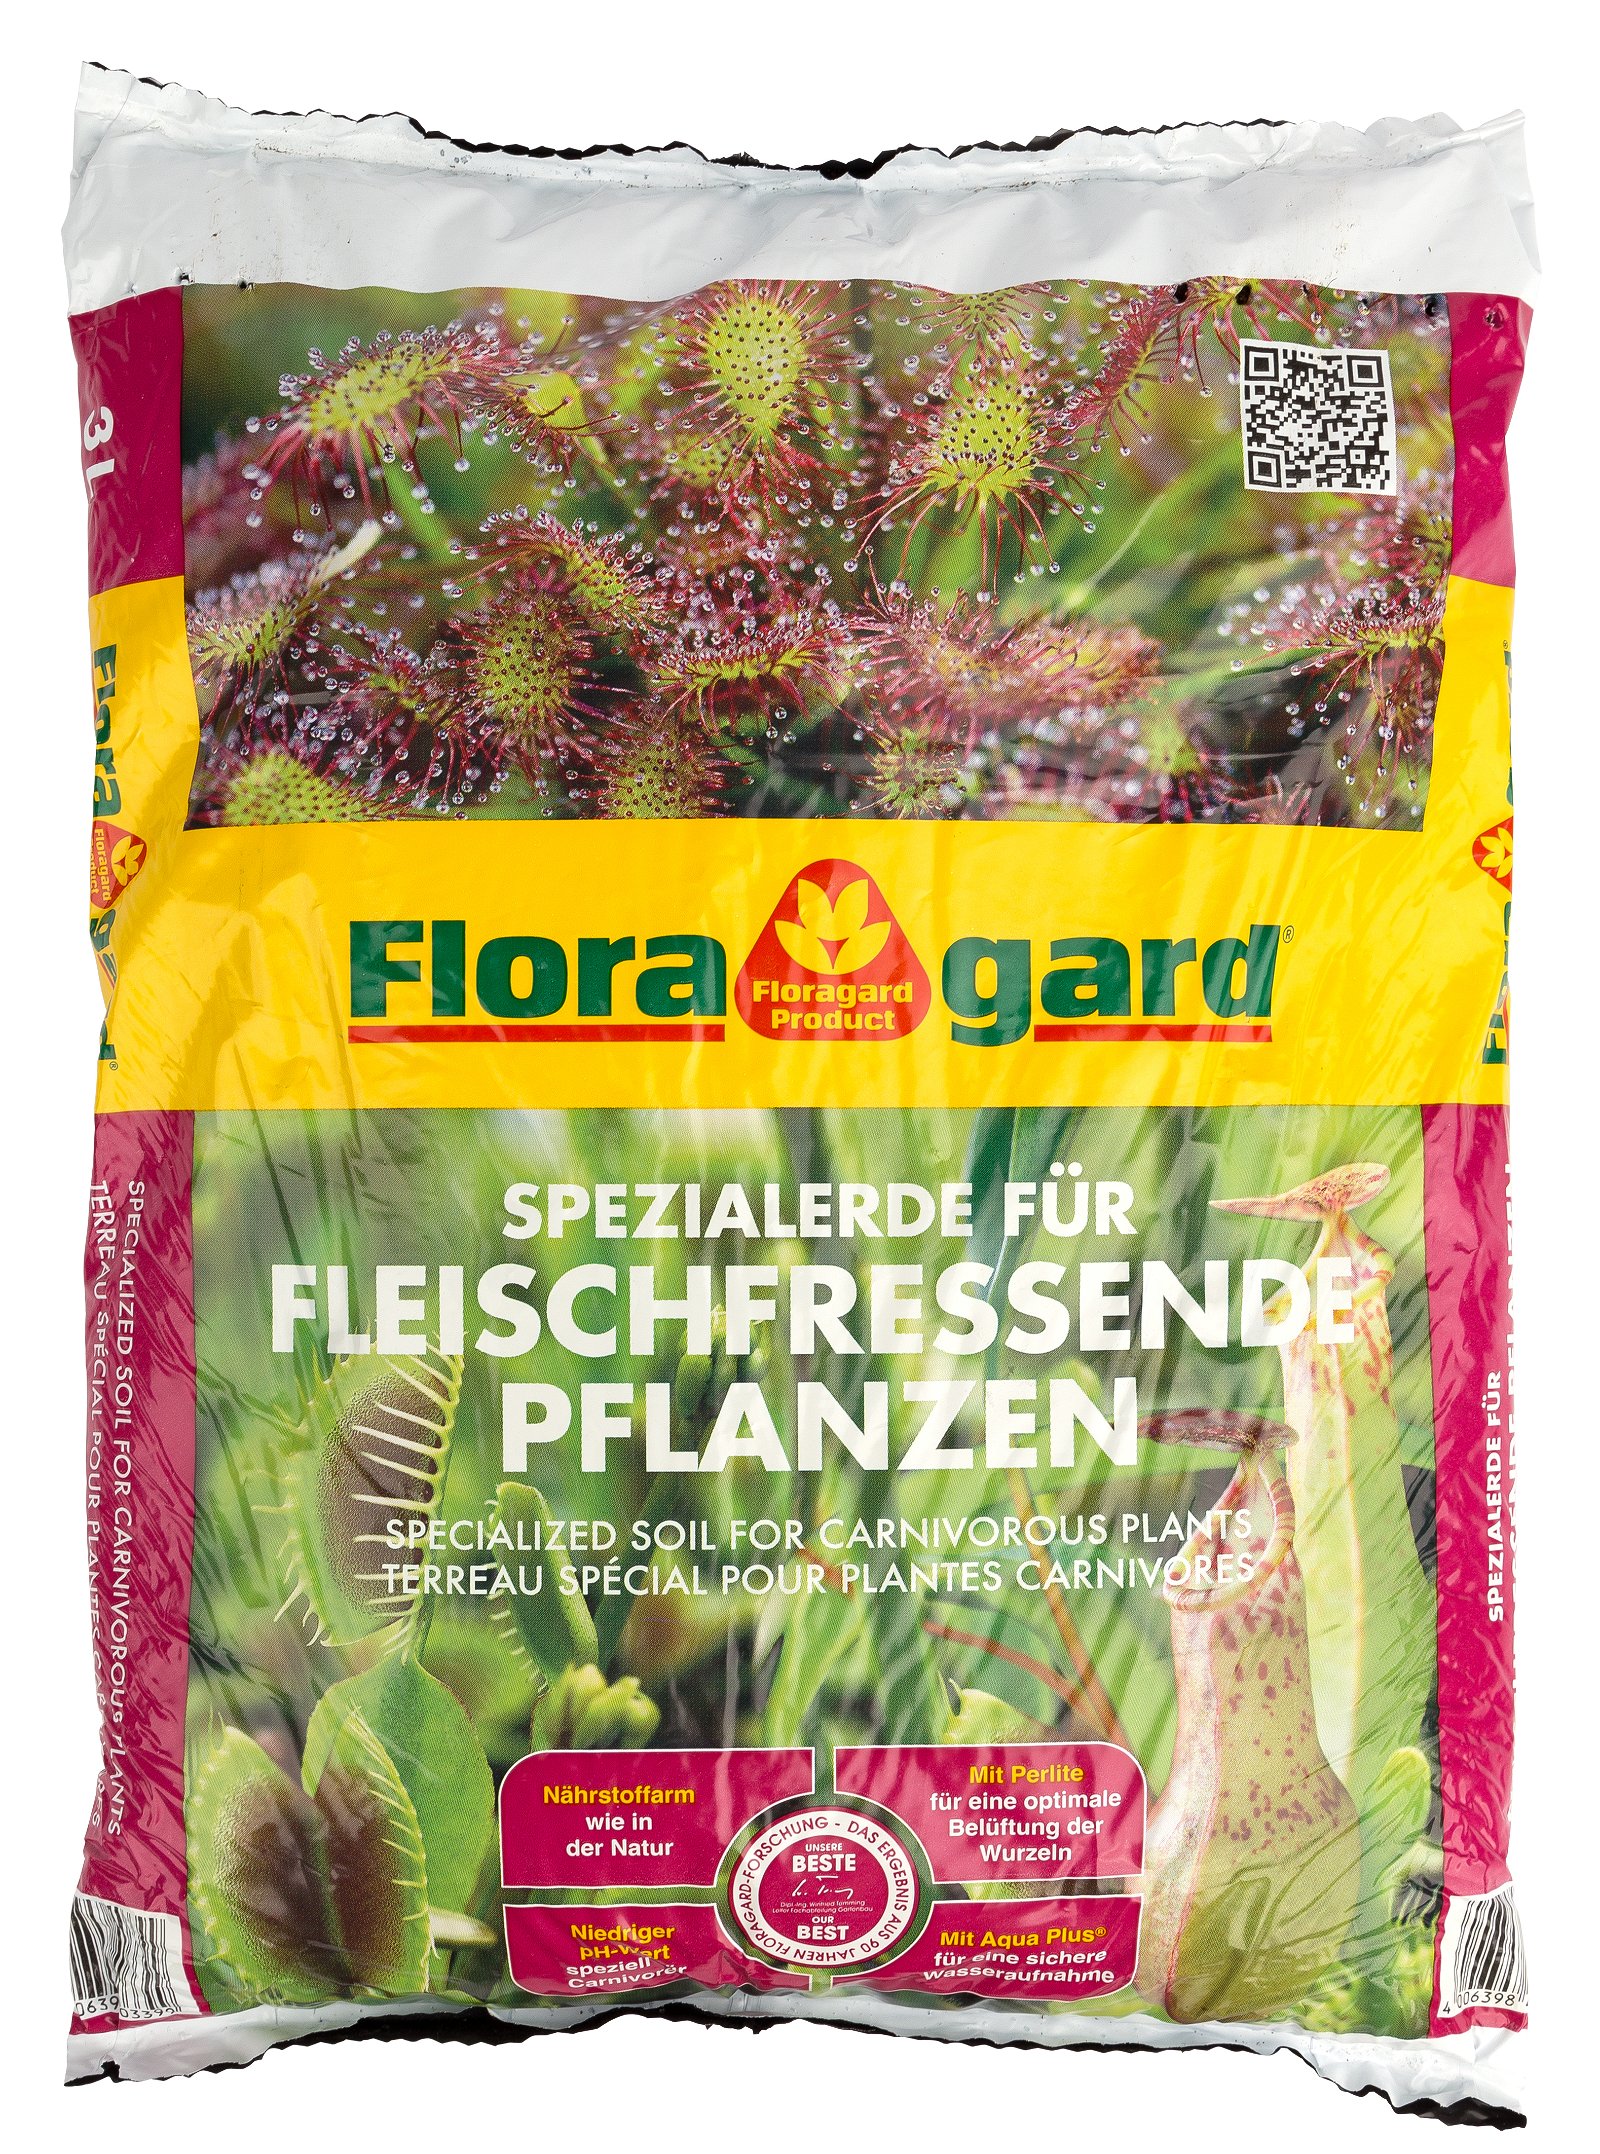 Floragard Spezialerde für fleischfressende Pflanzen 3 l